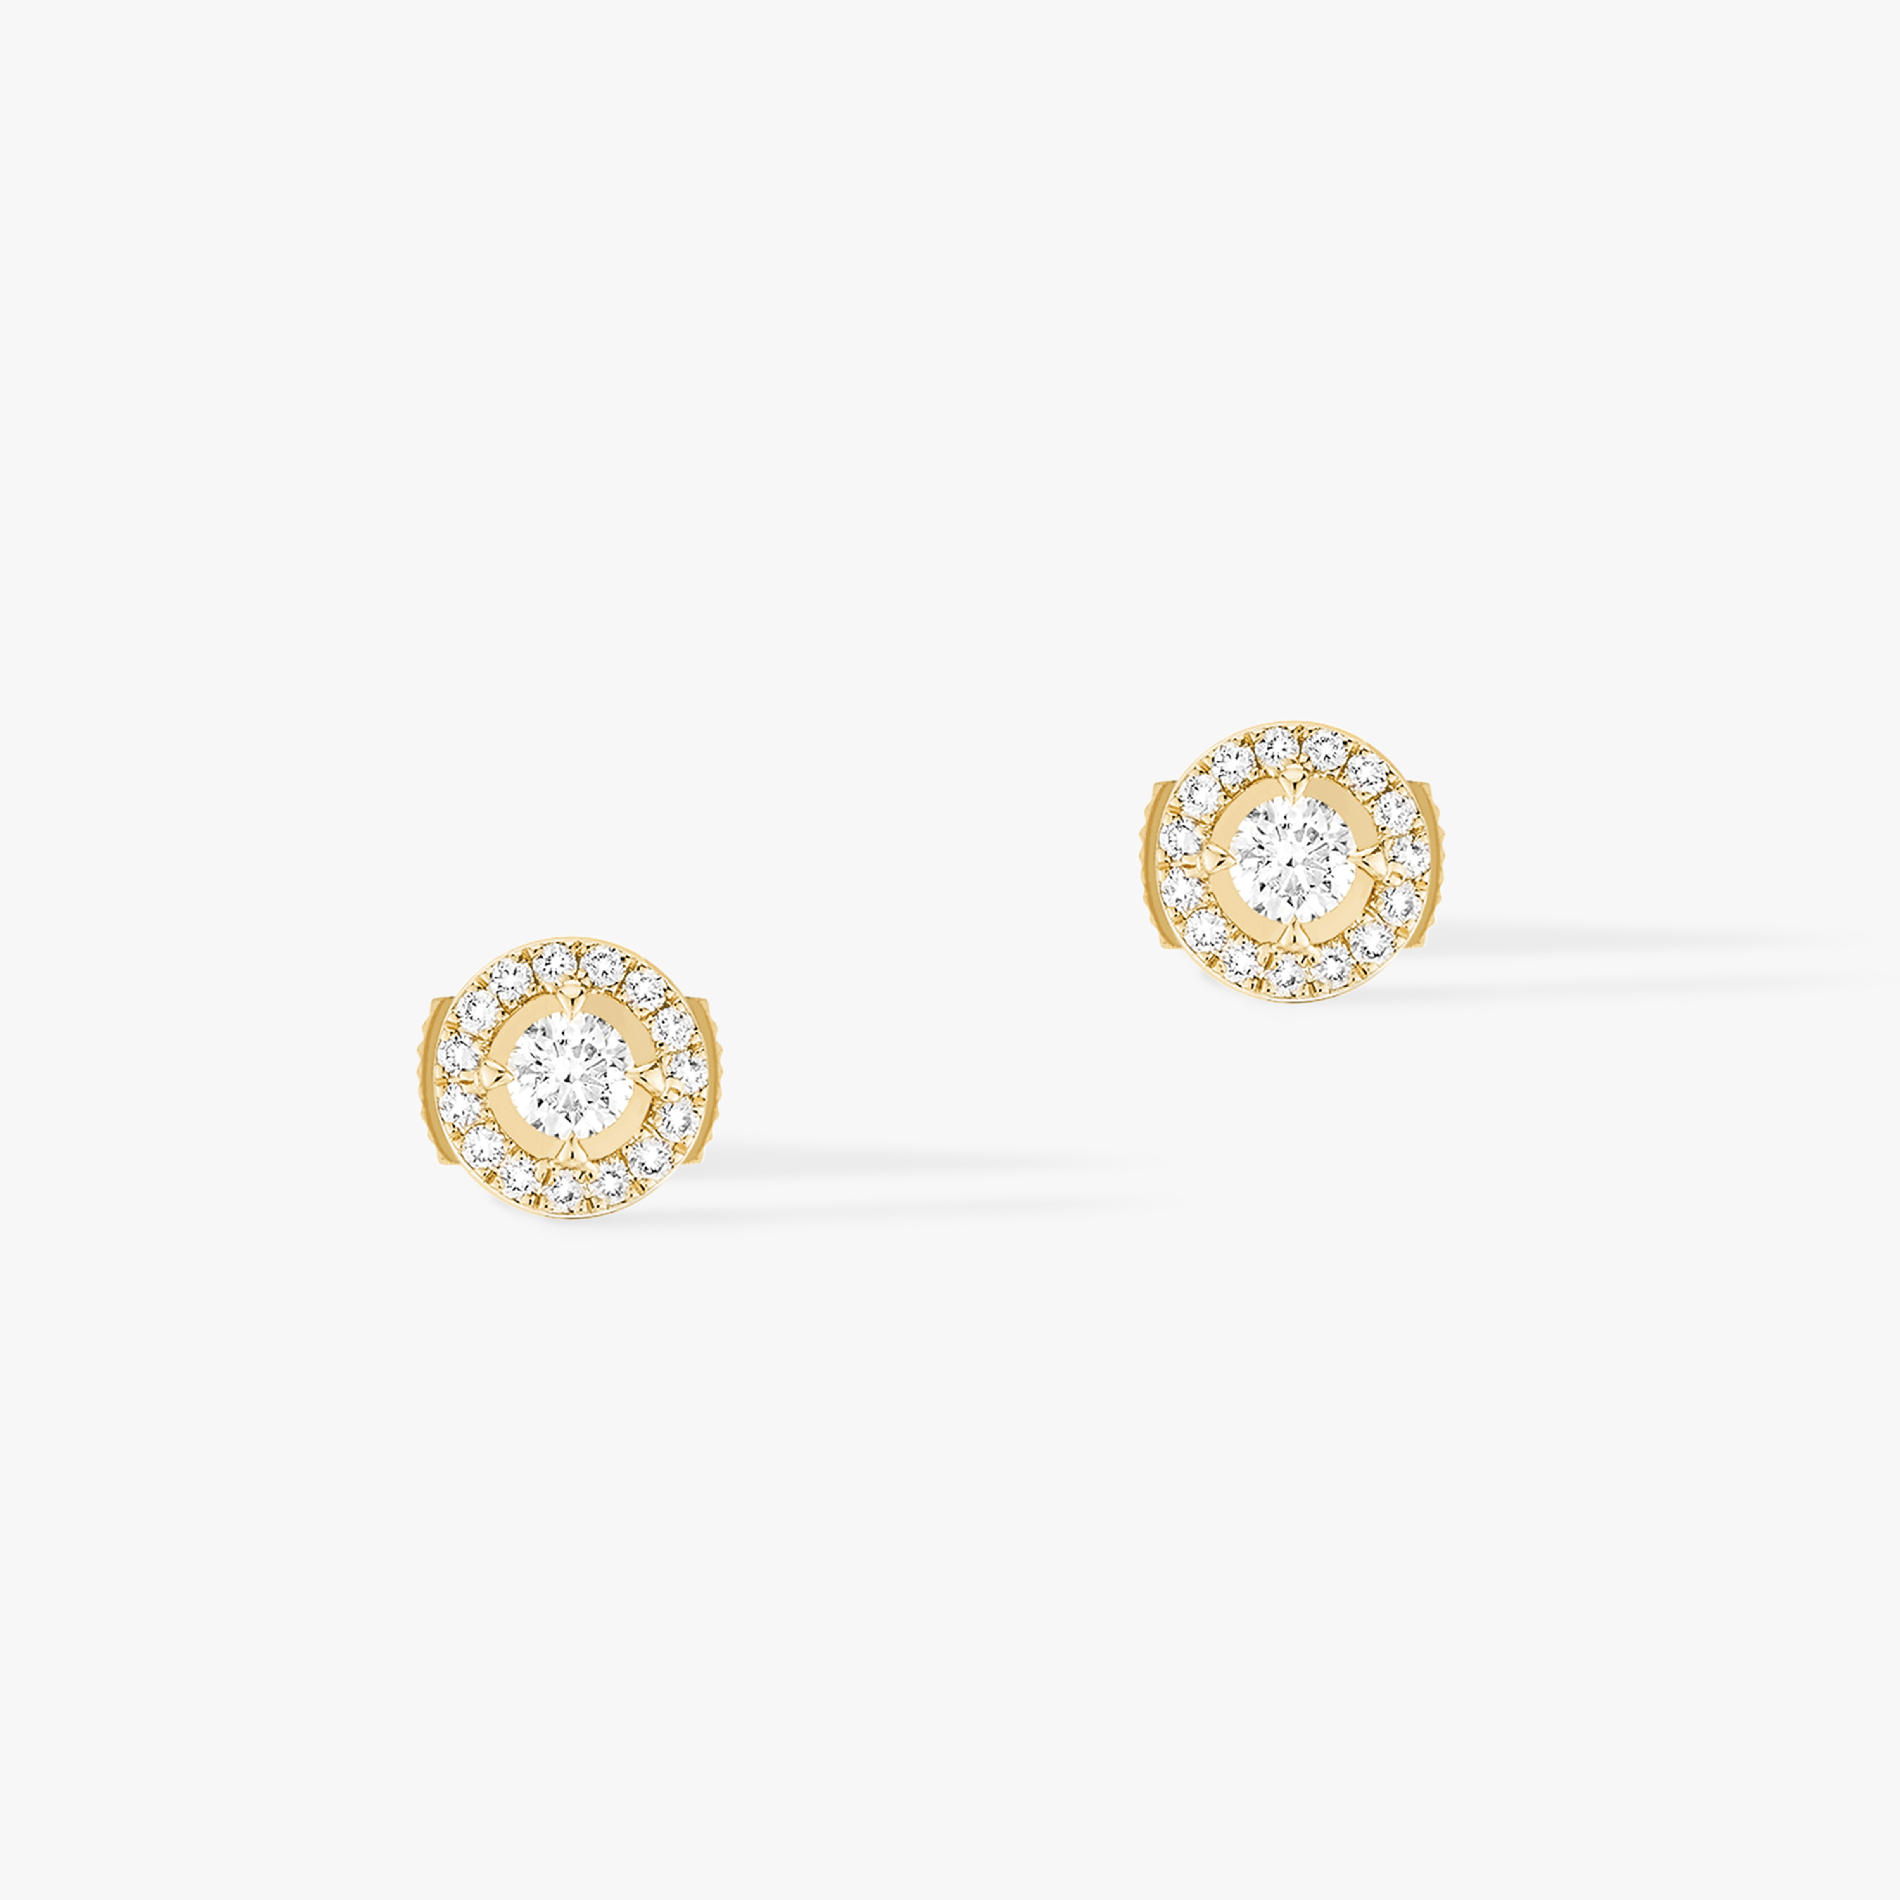 Boucles d'oreilles Femme Or Jaune Diamond Joy Diamants Ronds 0,10ct x 2 06991-YG